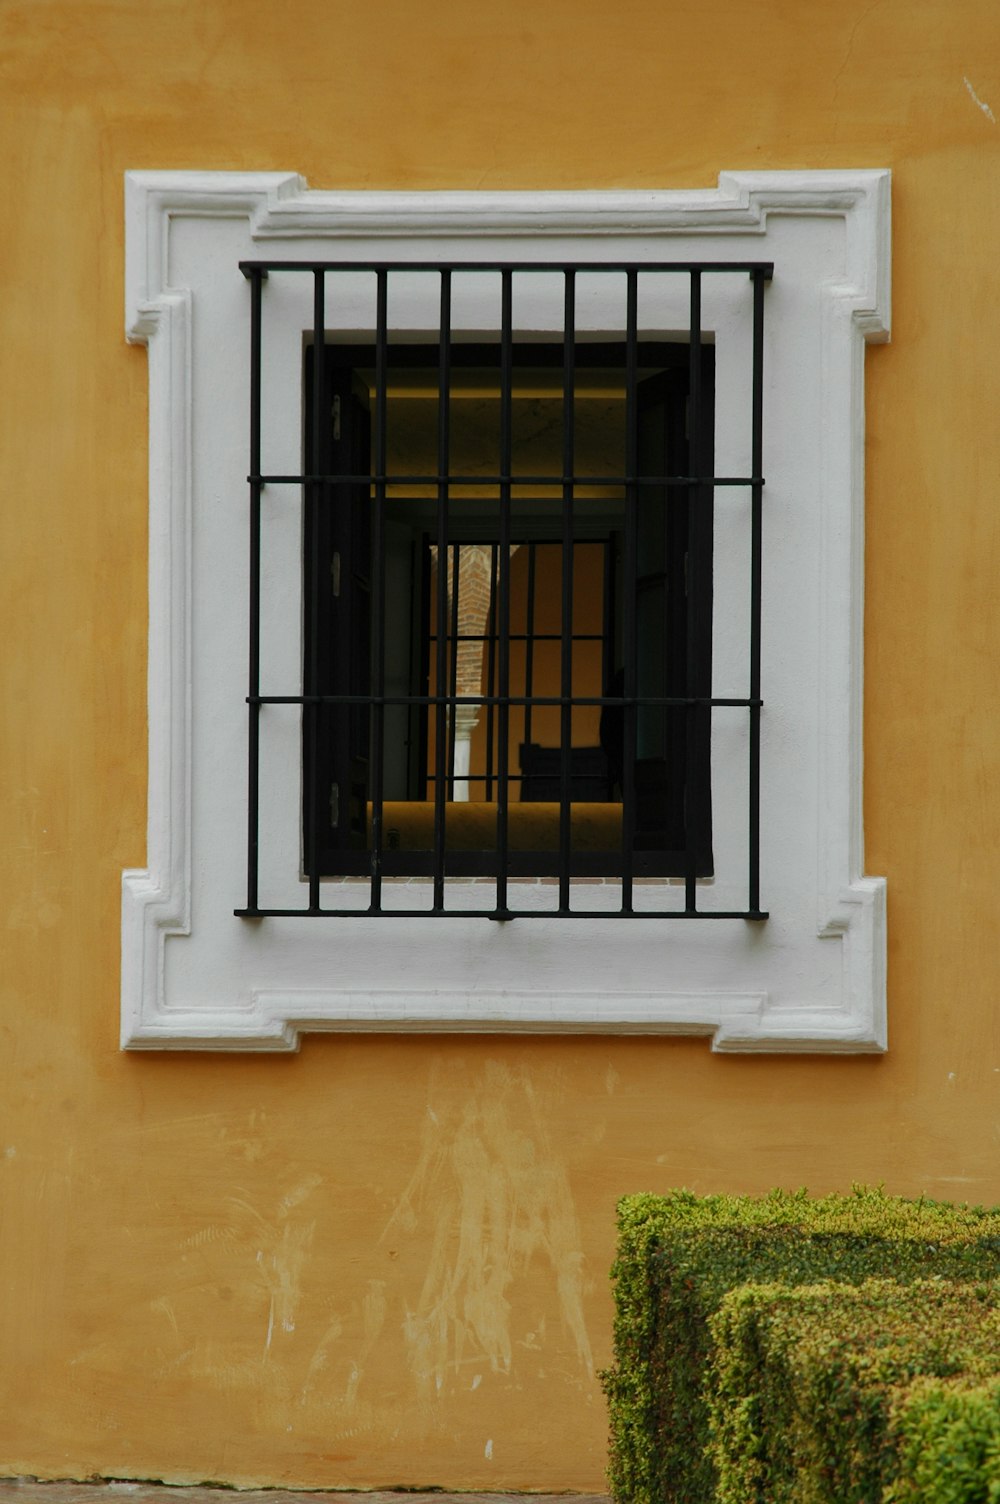 茶色のコンクリートの壁に黒い金属製の窓のグリル